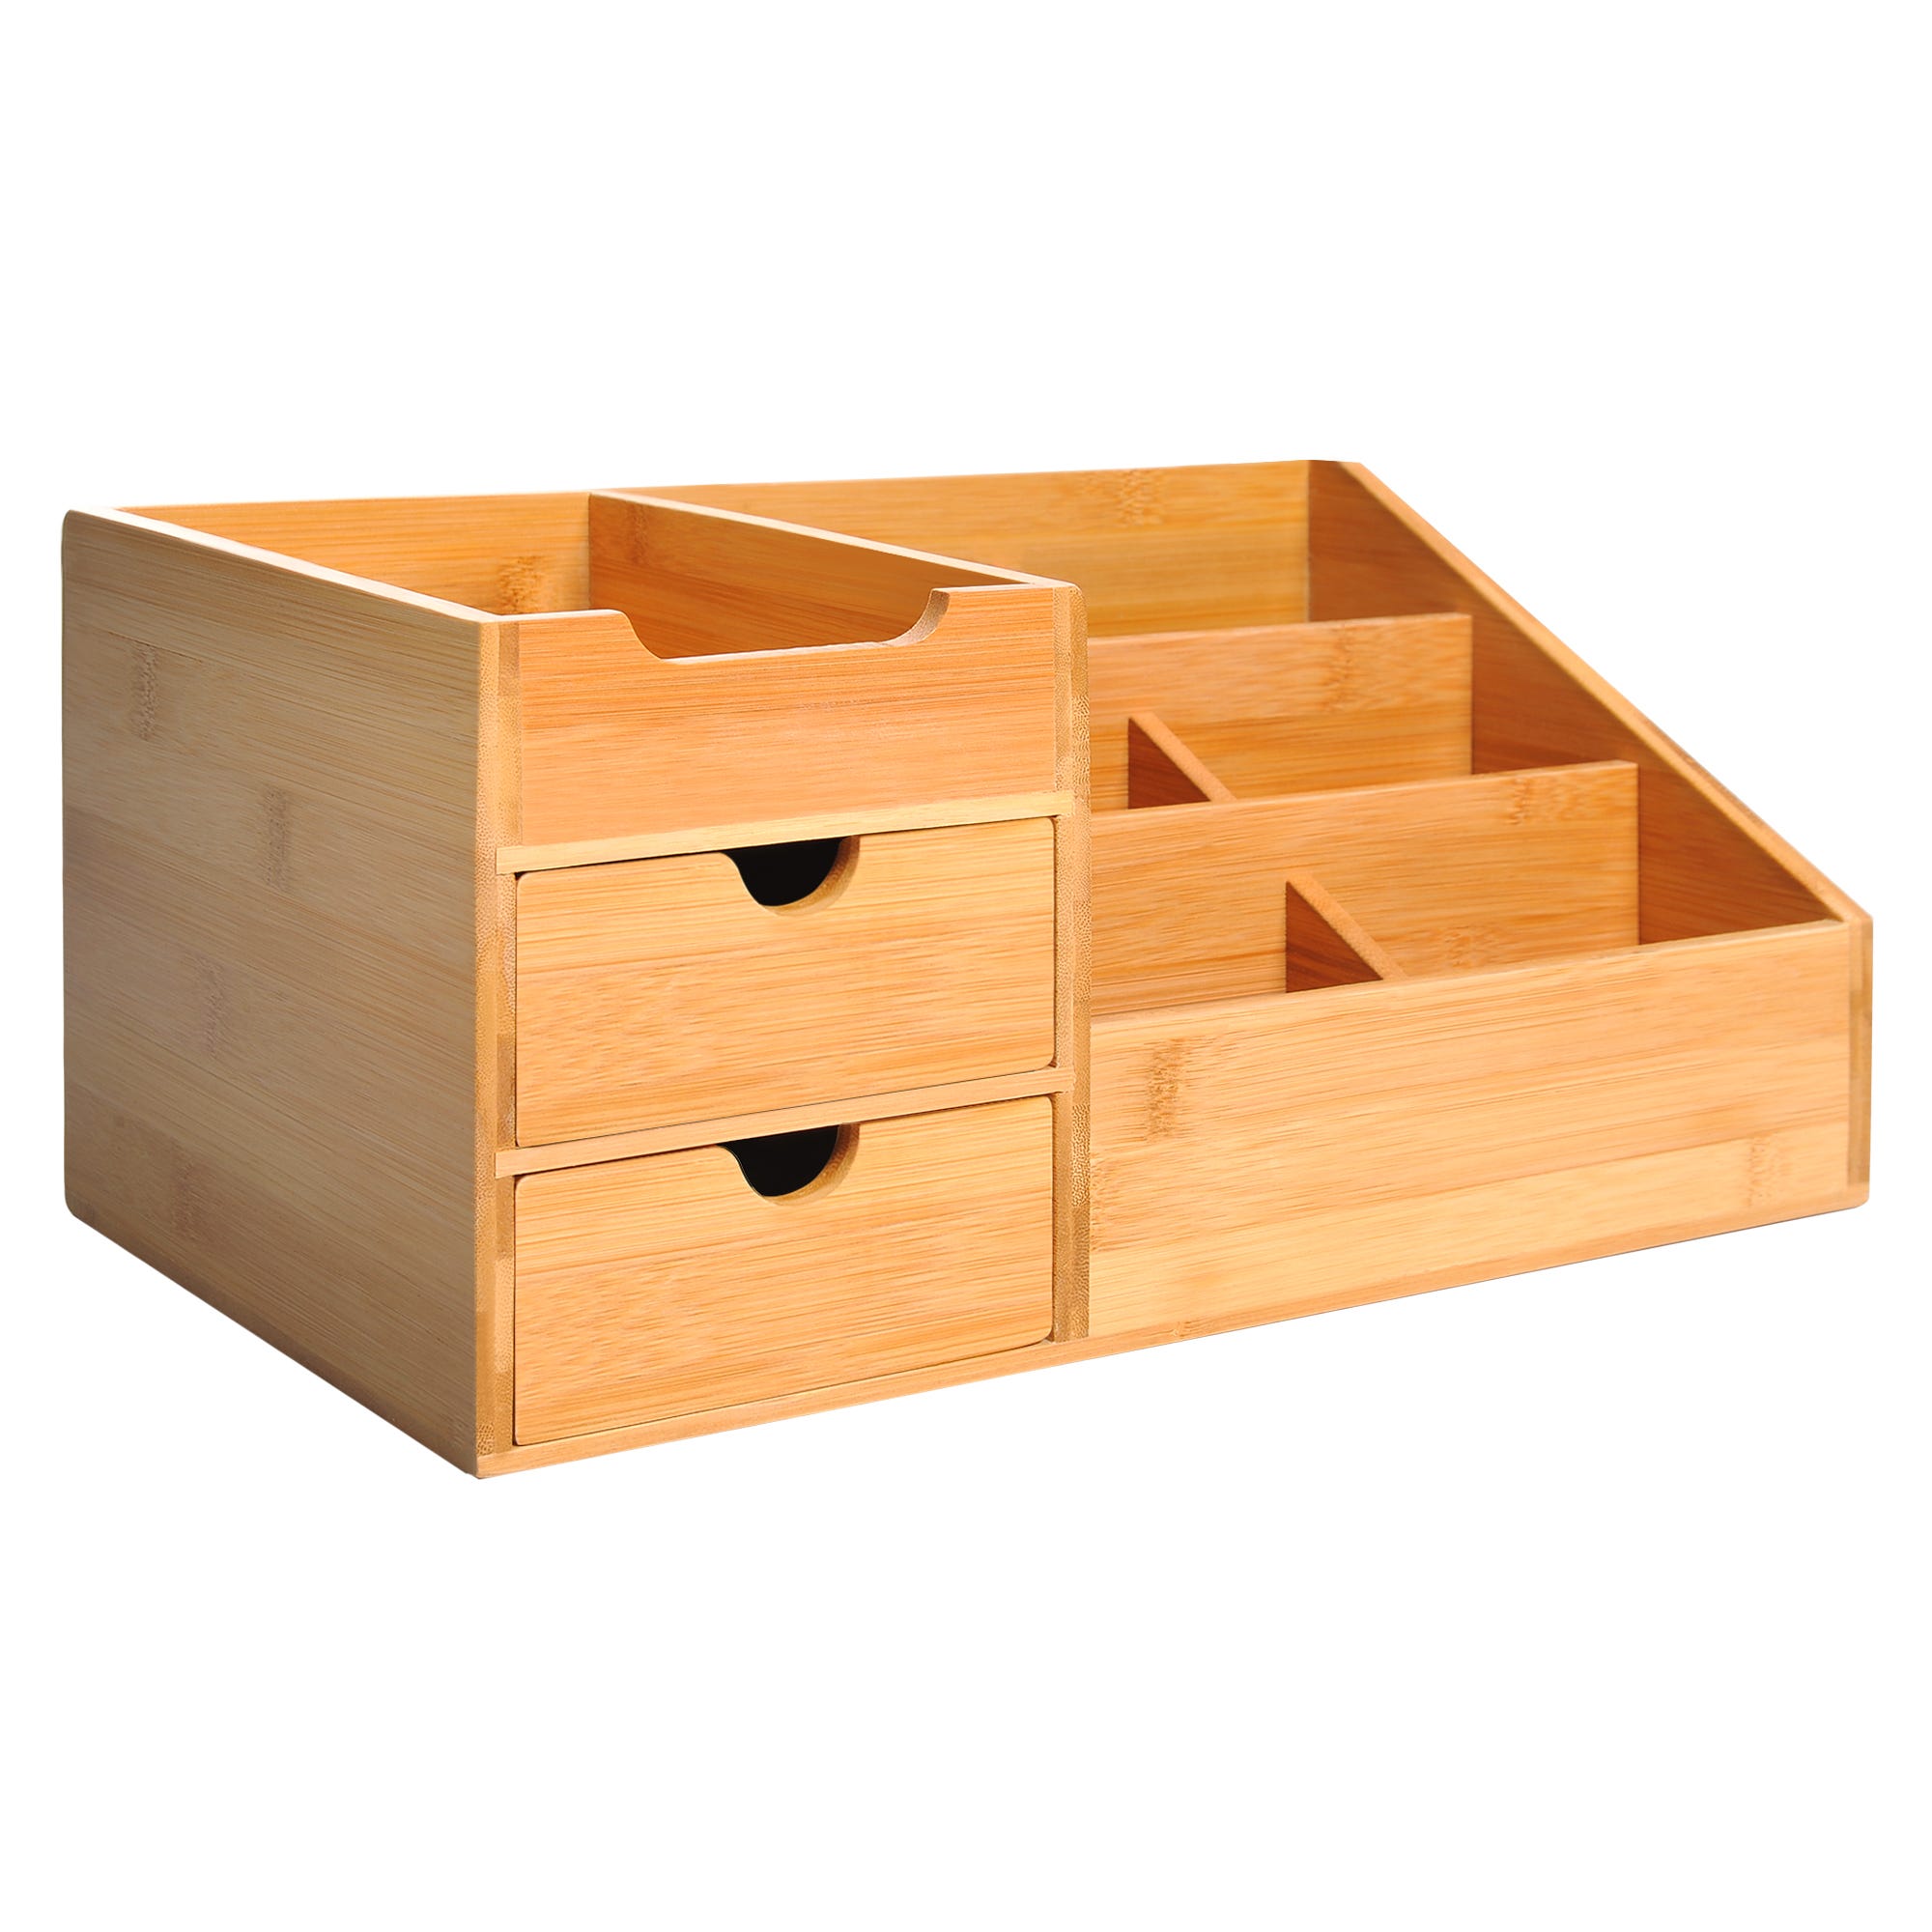 1 organizador de escritorio (madera), organizador de escritorio